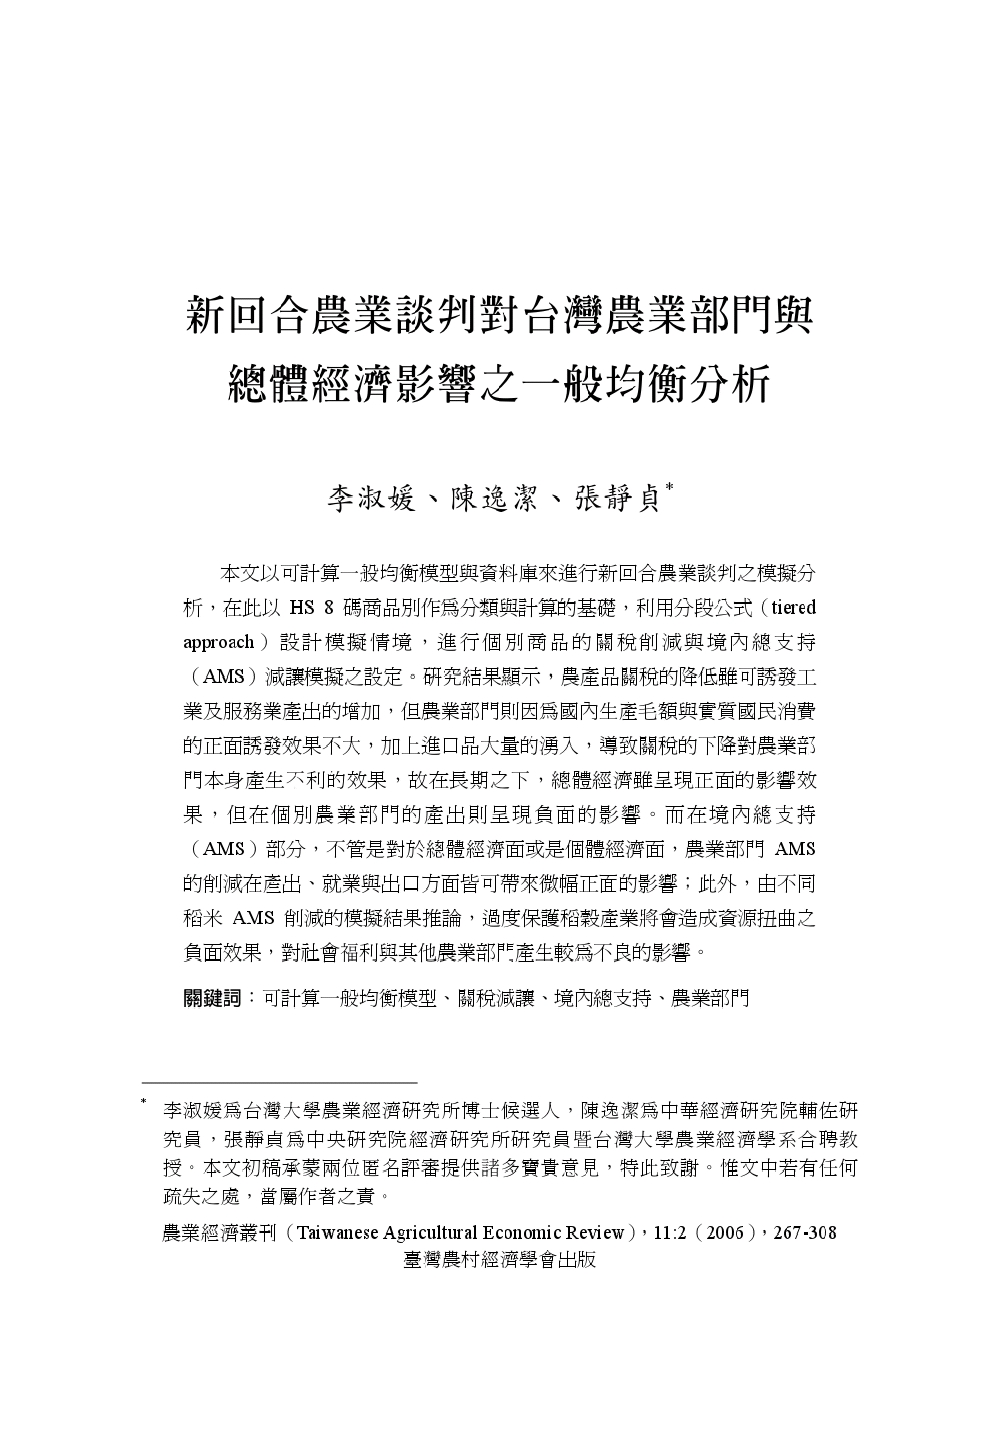 新回合農業談判對台灣農業部門與總體經濟影響之一般均衡分析.jpg